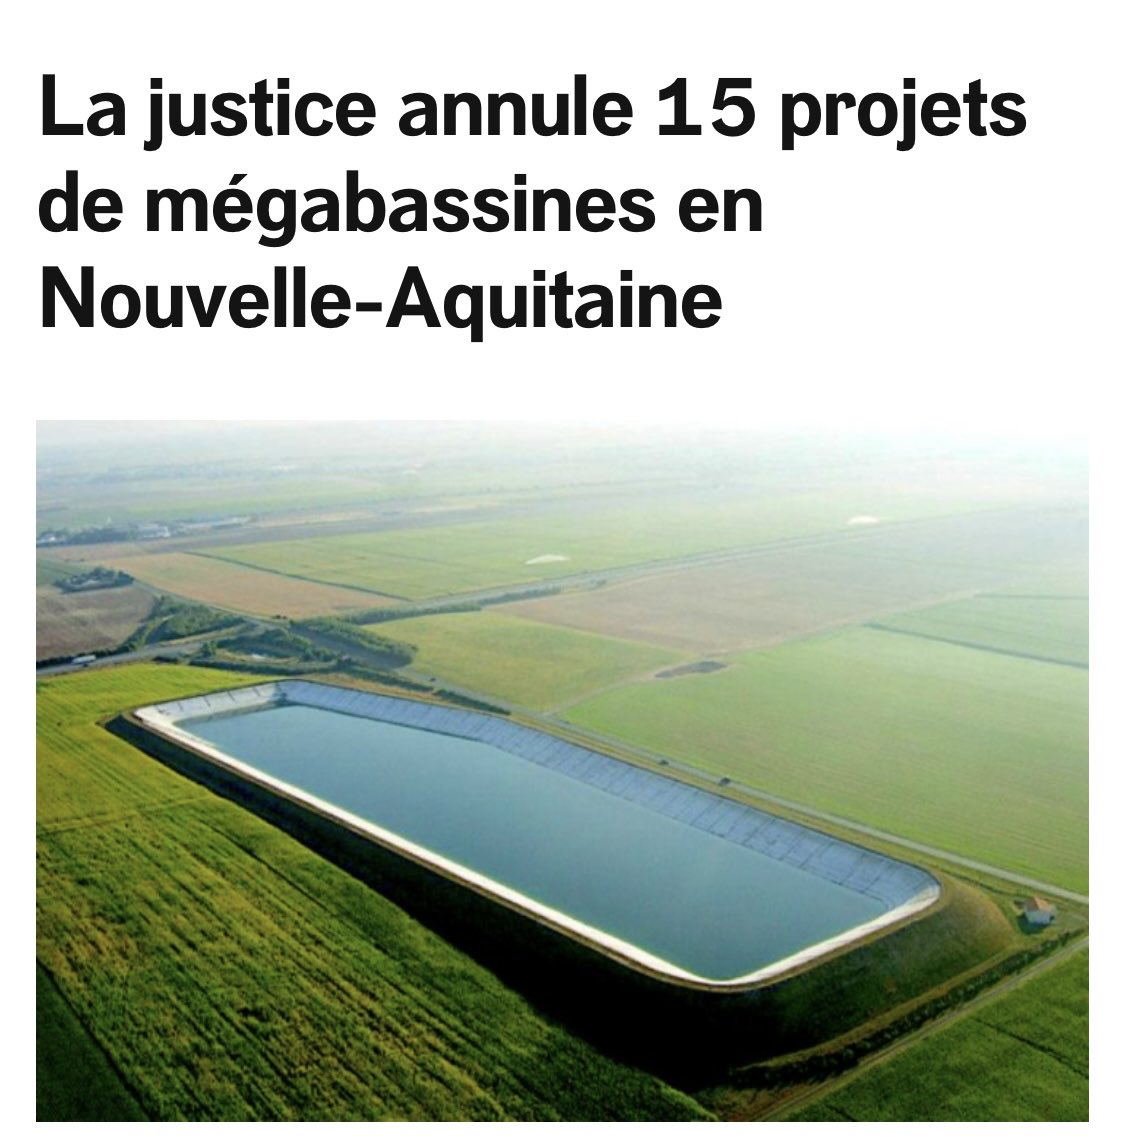 Enfin un retour à la raison. Ces #bassines contraires à une bonne gestion de l’eau, sans débat sur une agriculture alternative ont tj été refusées lorsque je présidais Poitou-Charentes. Qui va réparer les blessures infligées aux opposants qualifiés d’éco-terroristes ? #SteSoline